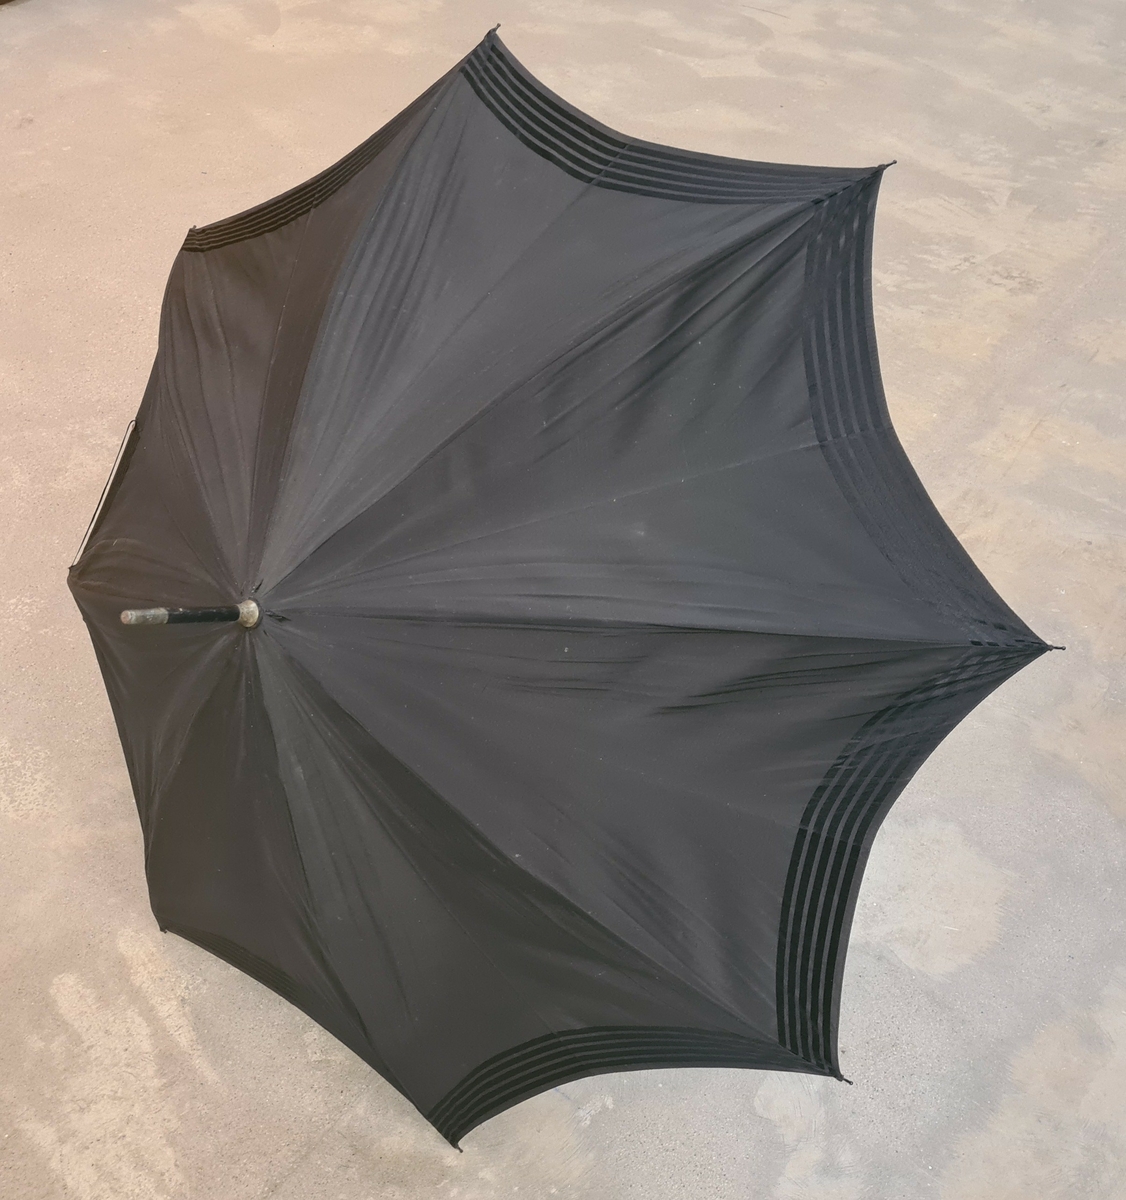 Parasoll i svart tyg. Vid skaftet hänger två tofsar.

Ingår i en samling av nio olika parasoller med olika utseende och modell.